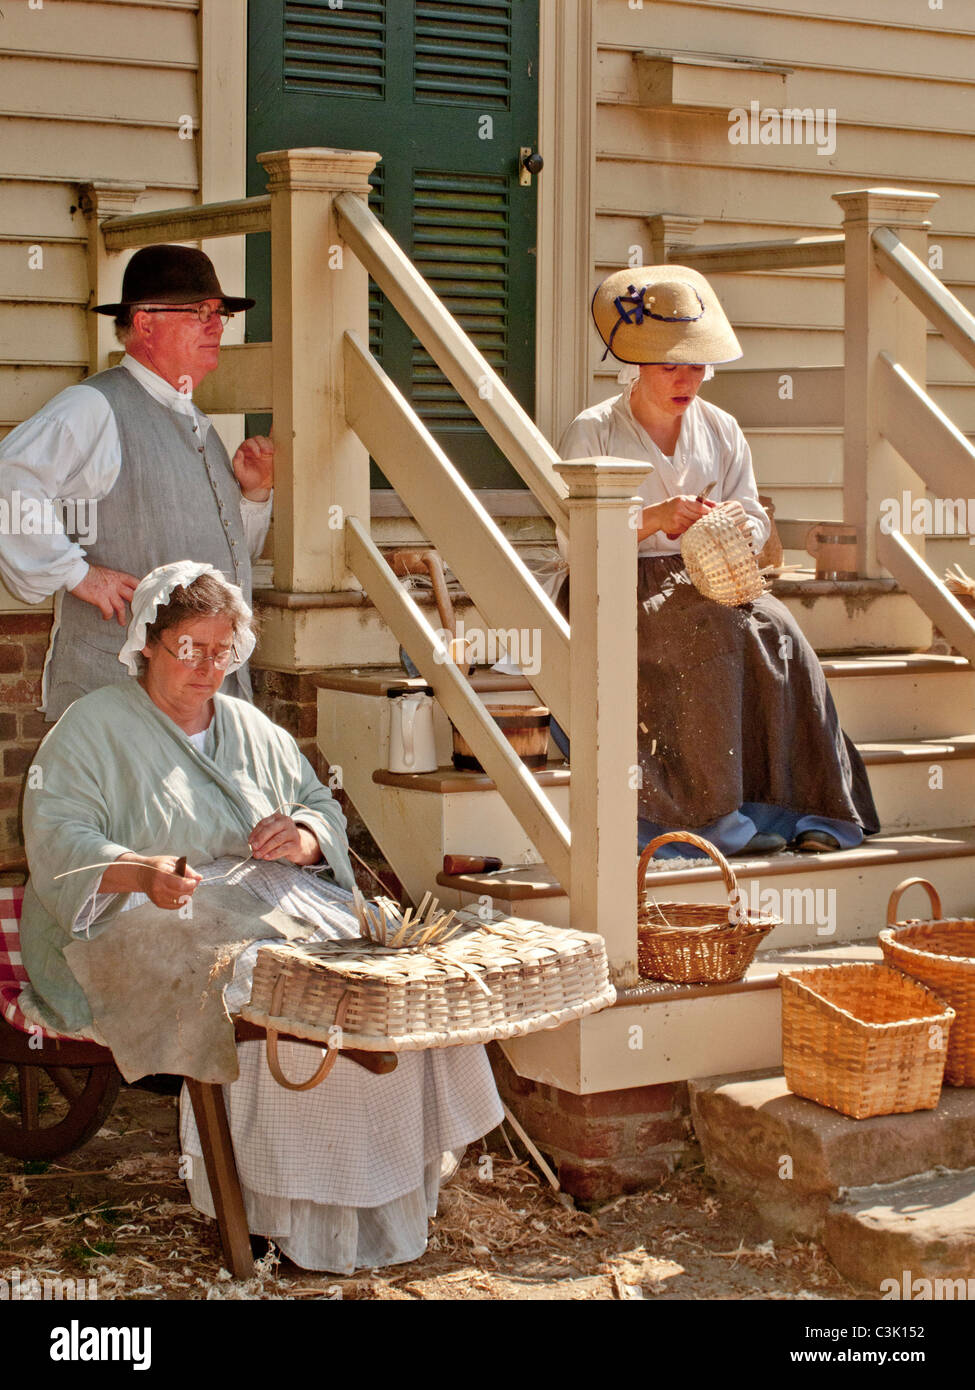 Portant des costumes historiques, reenactors démontrer panier historique-techniques de tissage dans la région de Colonial Williamsburg, VA. Banque D'Images